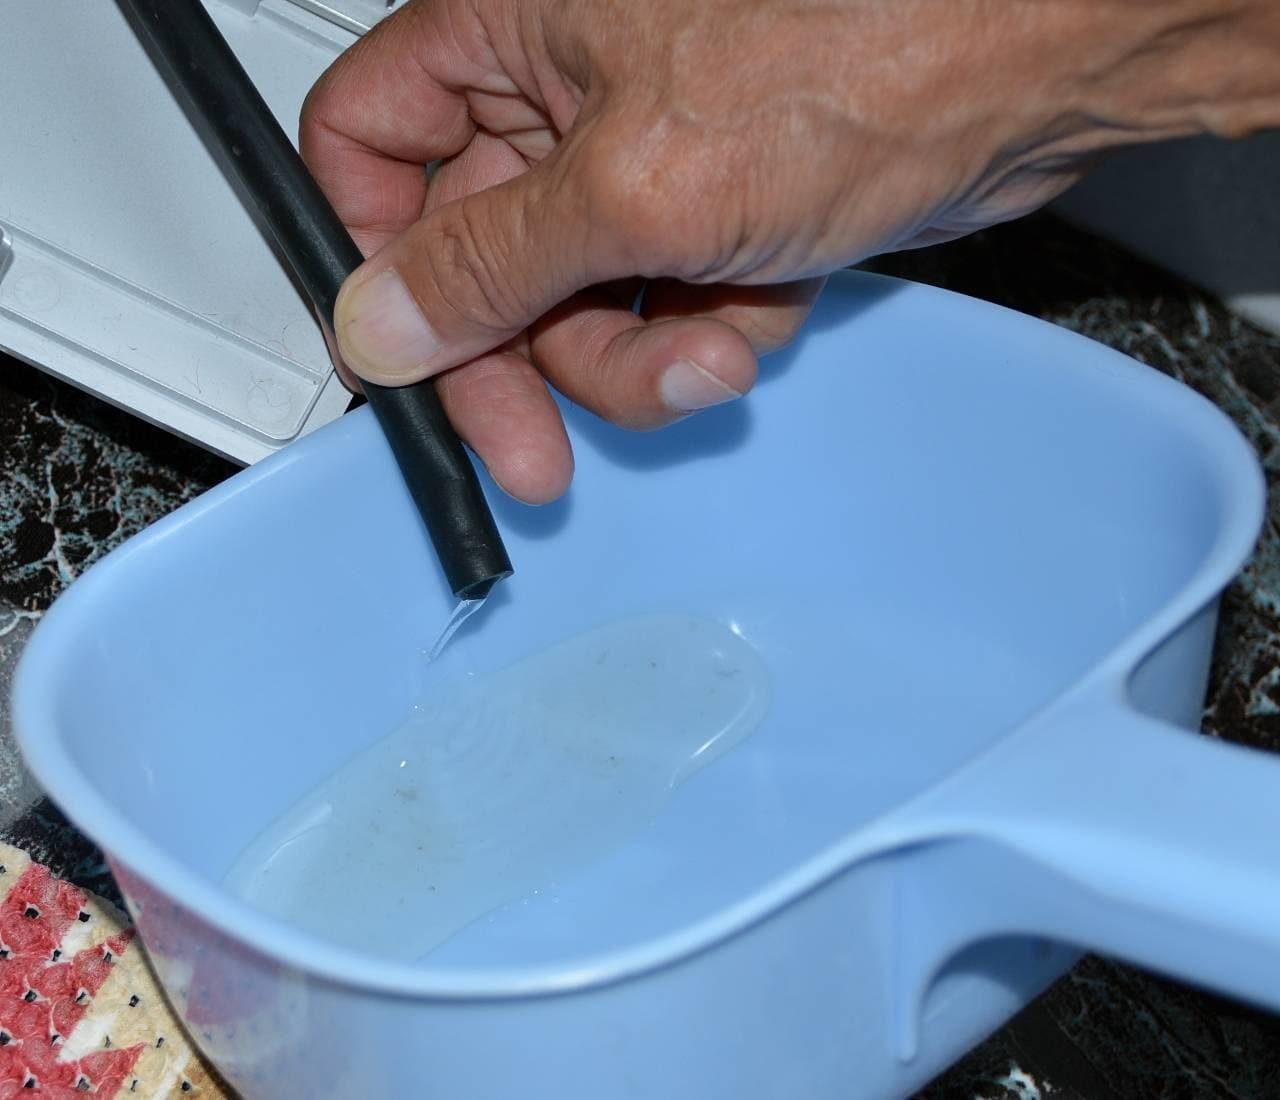 Как слить воду из стиральной машины самостоятельно: советы и видео